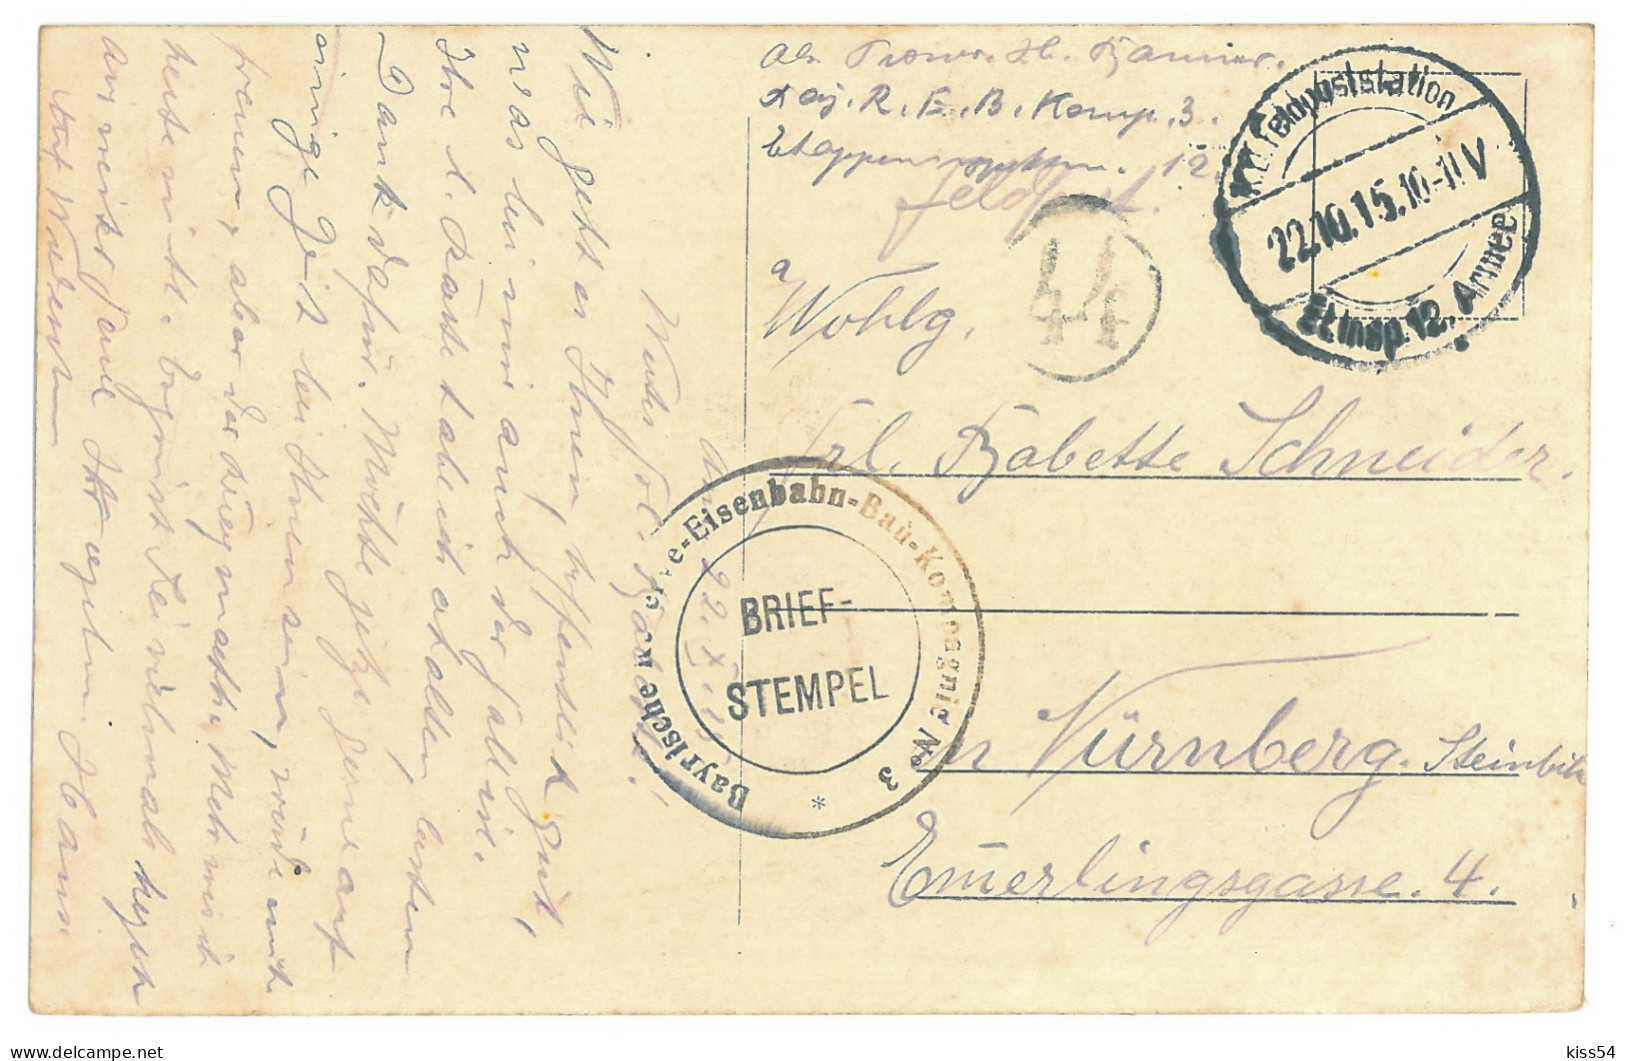 BL 29 - 16201 GRODNO, Belarus - Old Postcard, CENSOR - Used - 1915 - Weißrussland